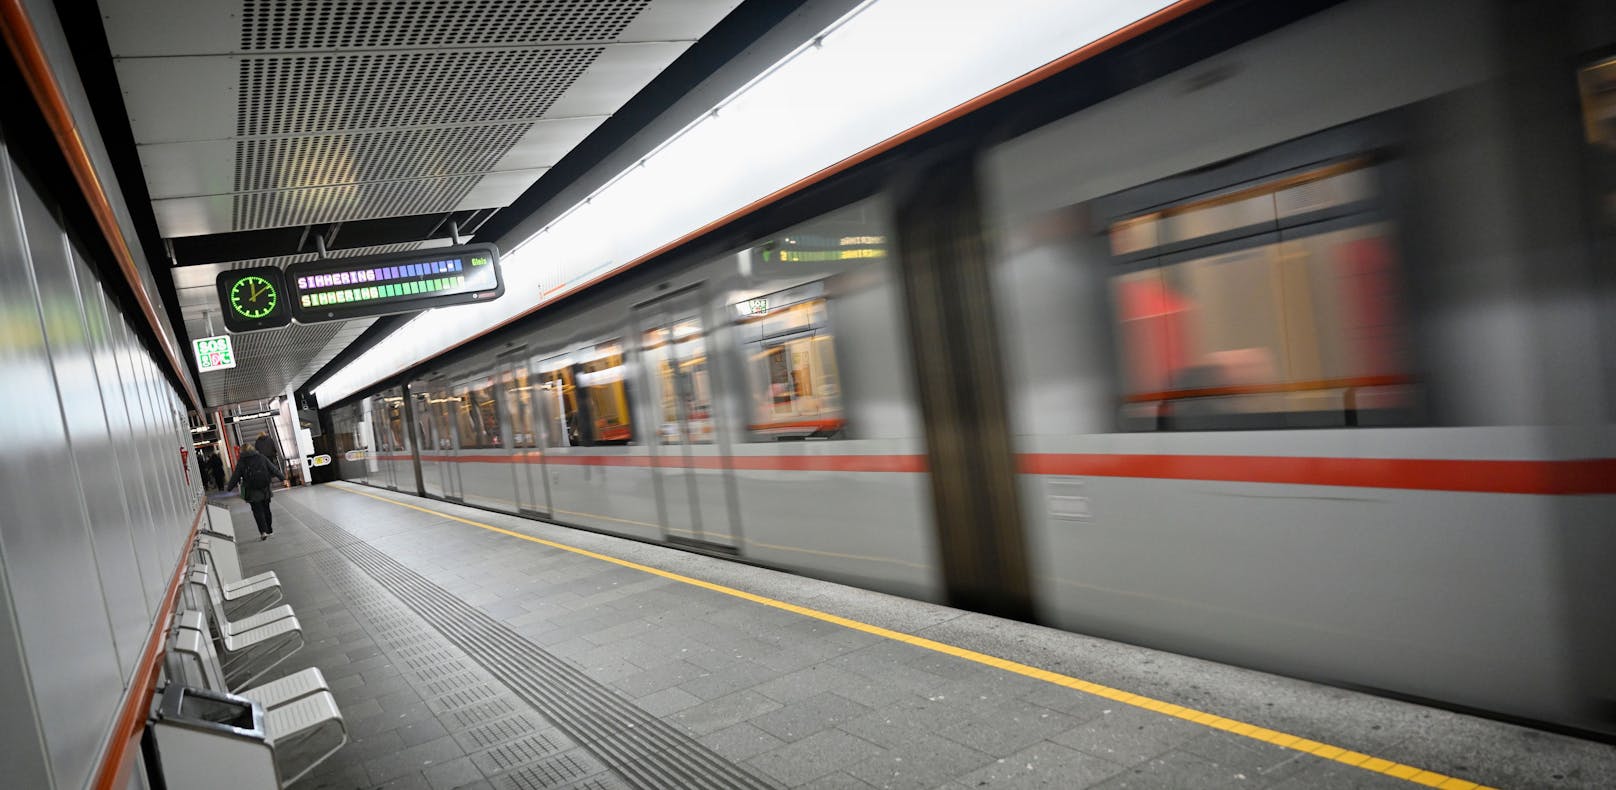 Wiens U-Bahnen erleuchten beim Bremsen die Stationen